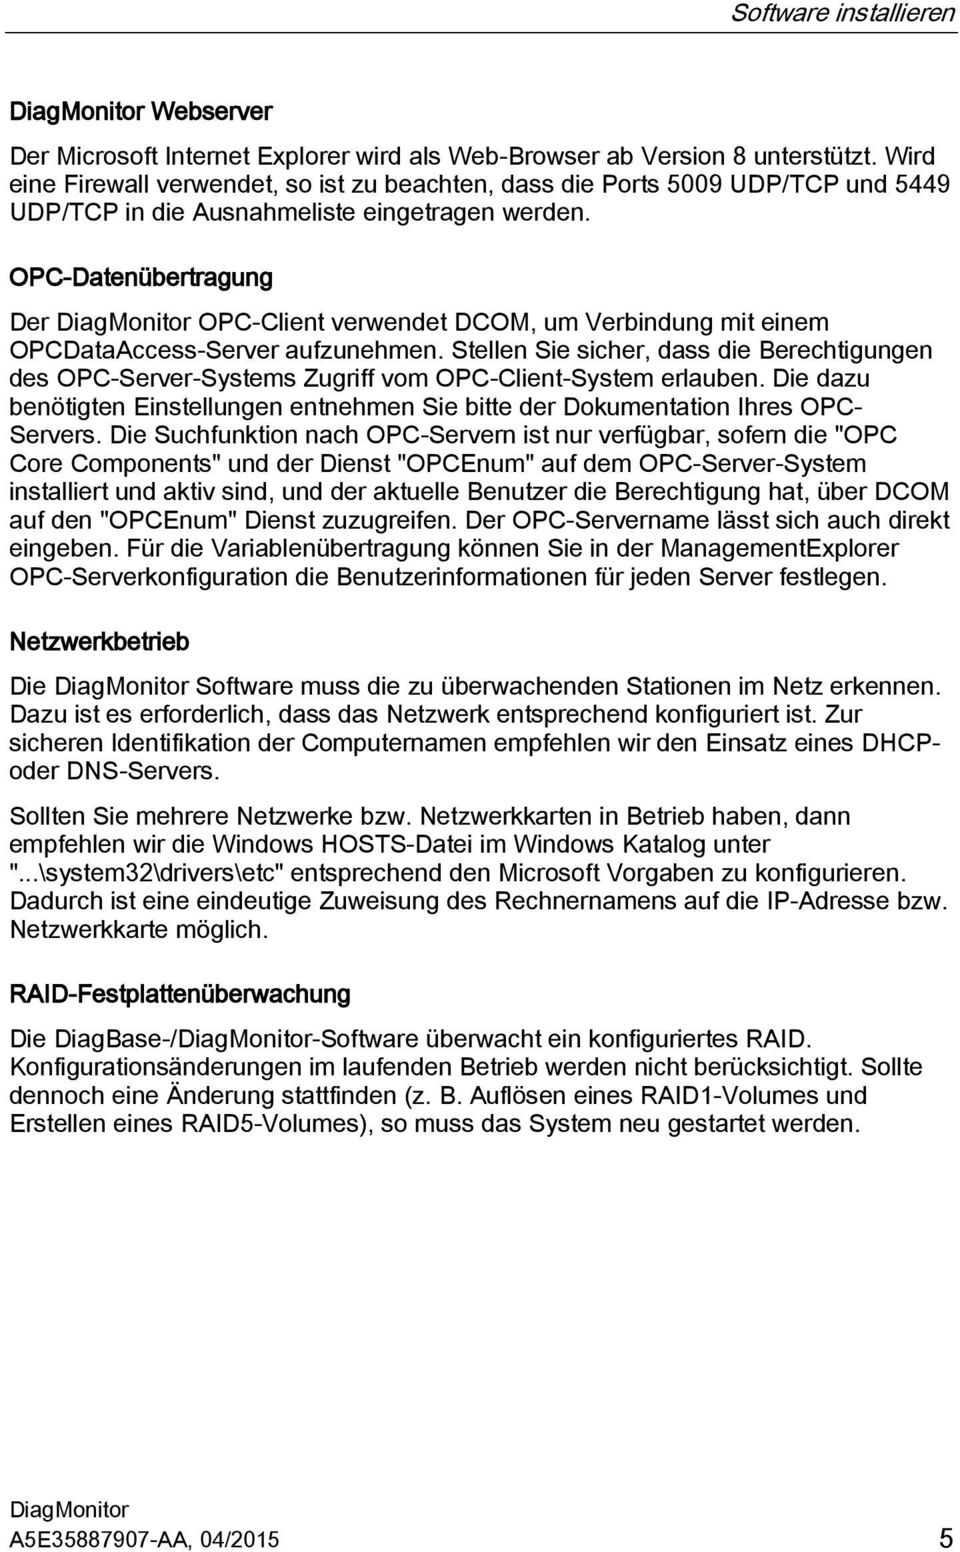 OPC-Datenübertragung Der OPC-Client verwendet DCOM, um Verbindung mit einem OPCDataAccess-Server aufzunehmen.